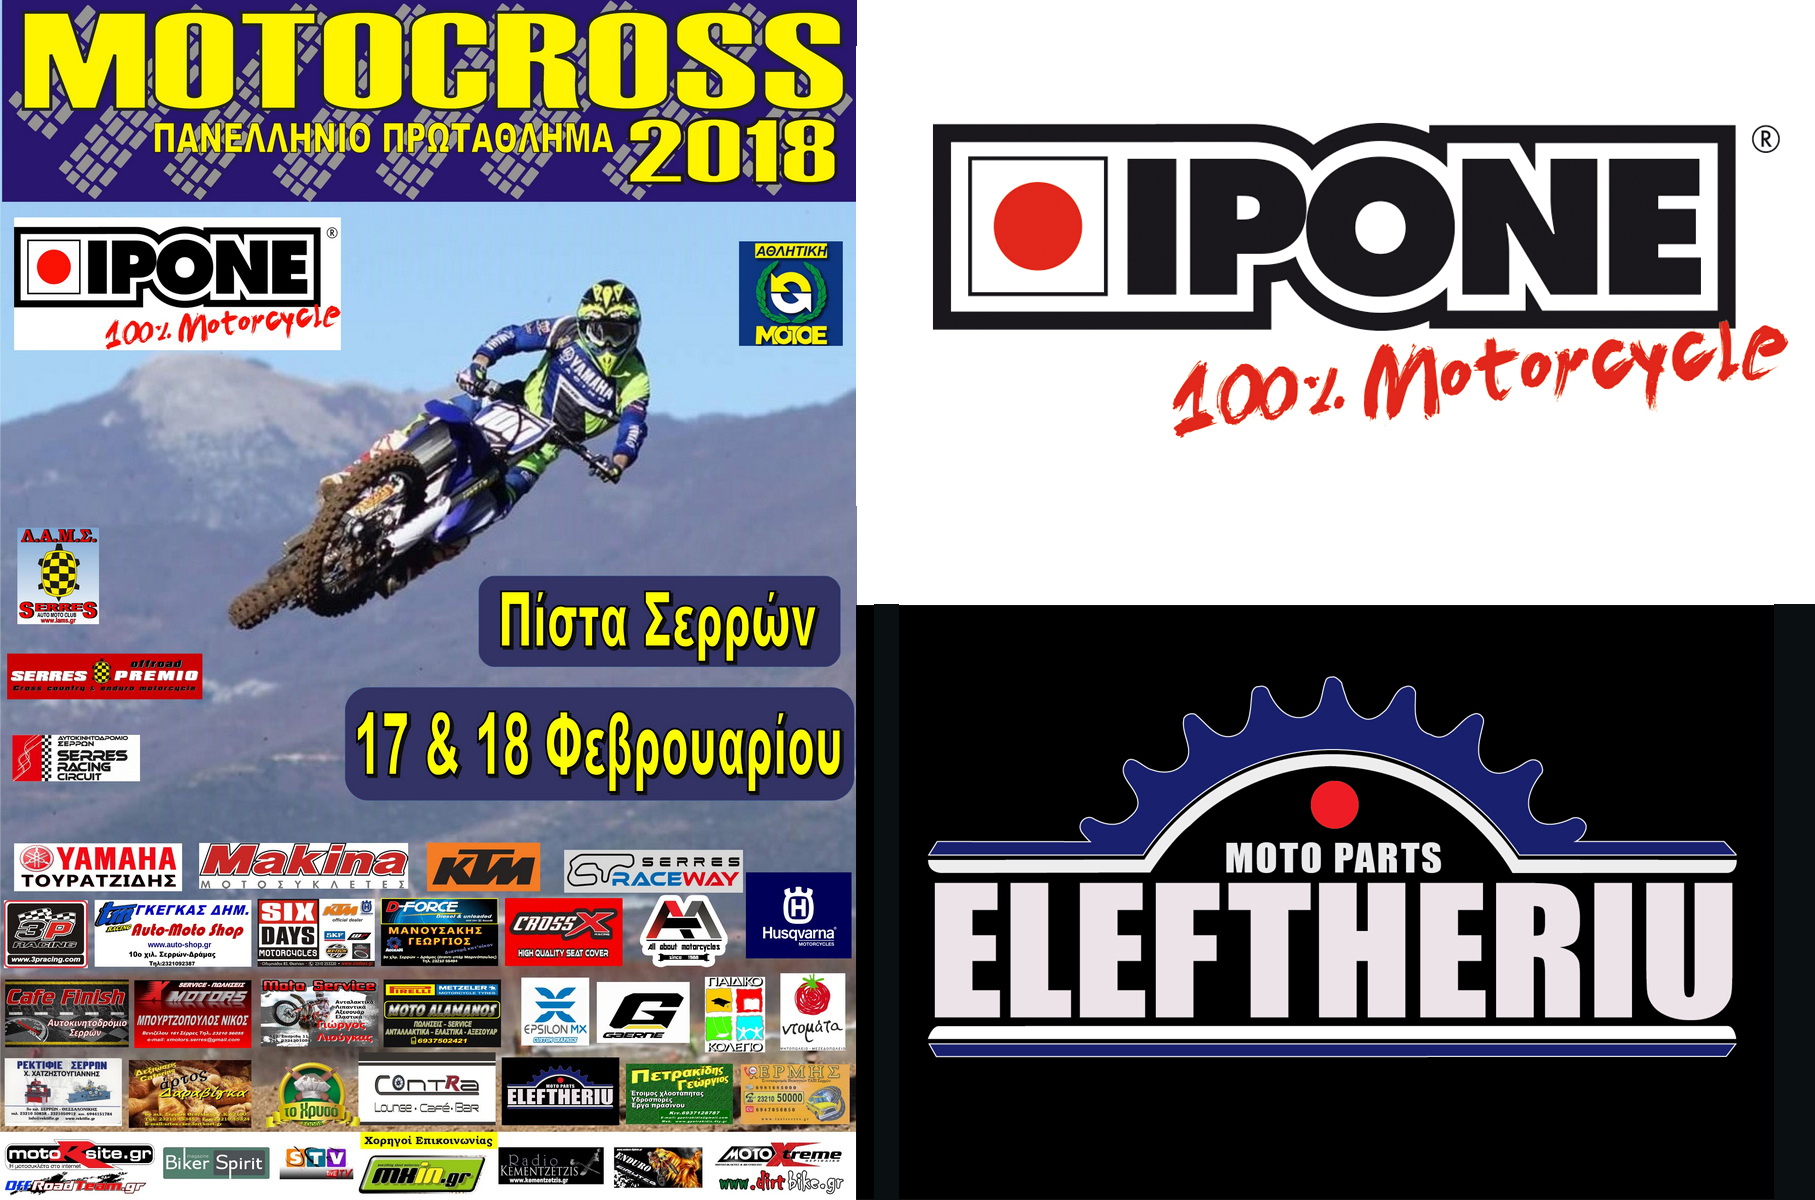 Λιπαντικά IPONE -  Κεντρικός χορηγός στο ΠΠ Motocross